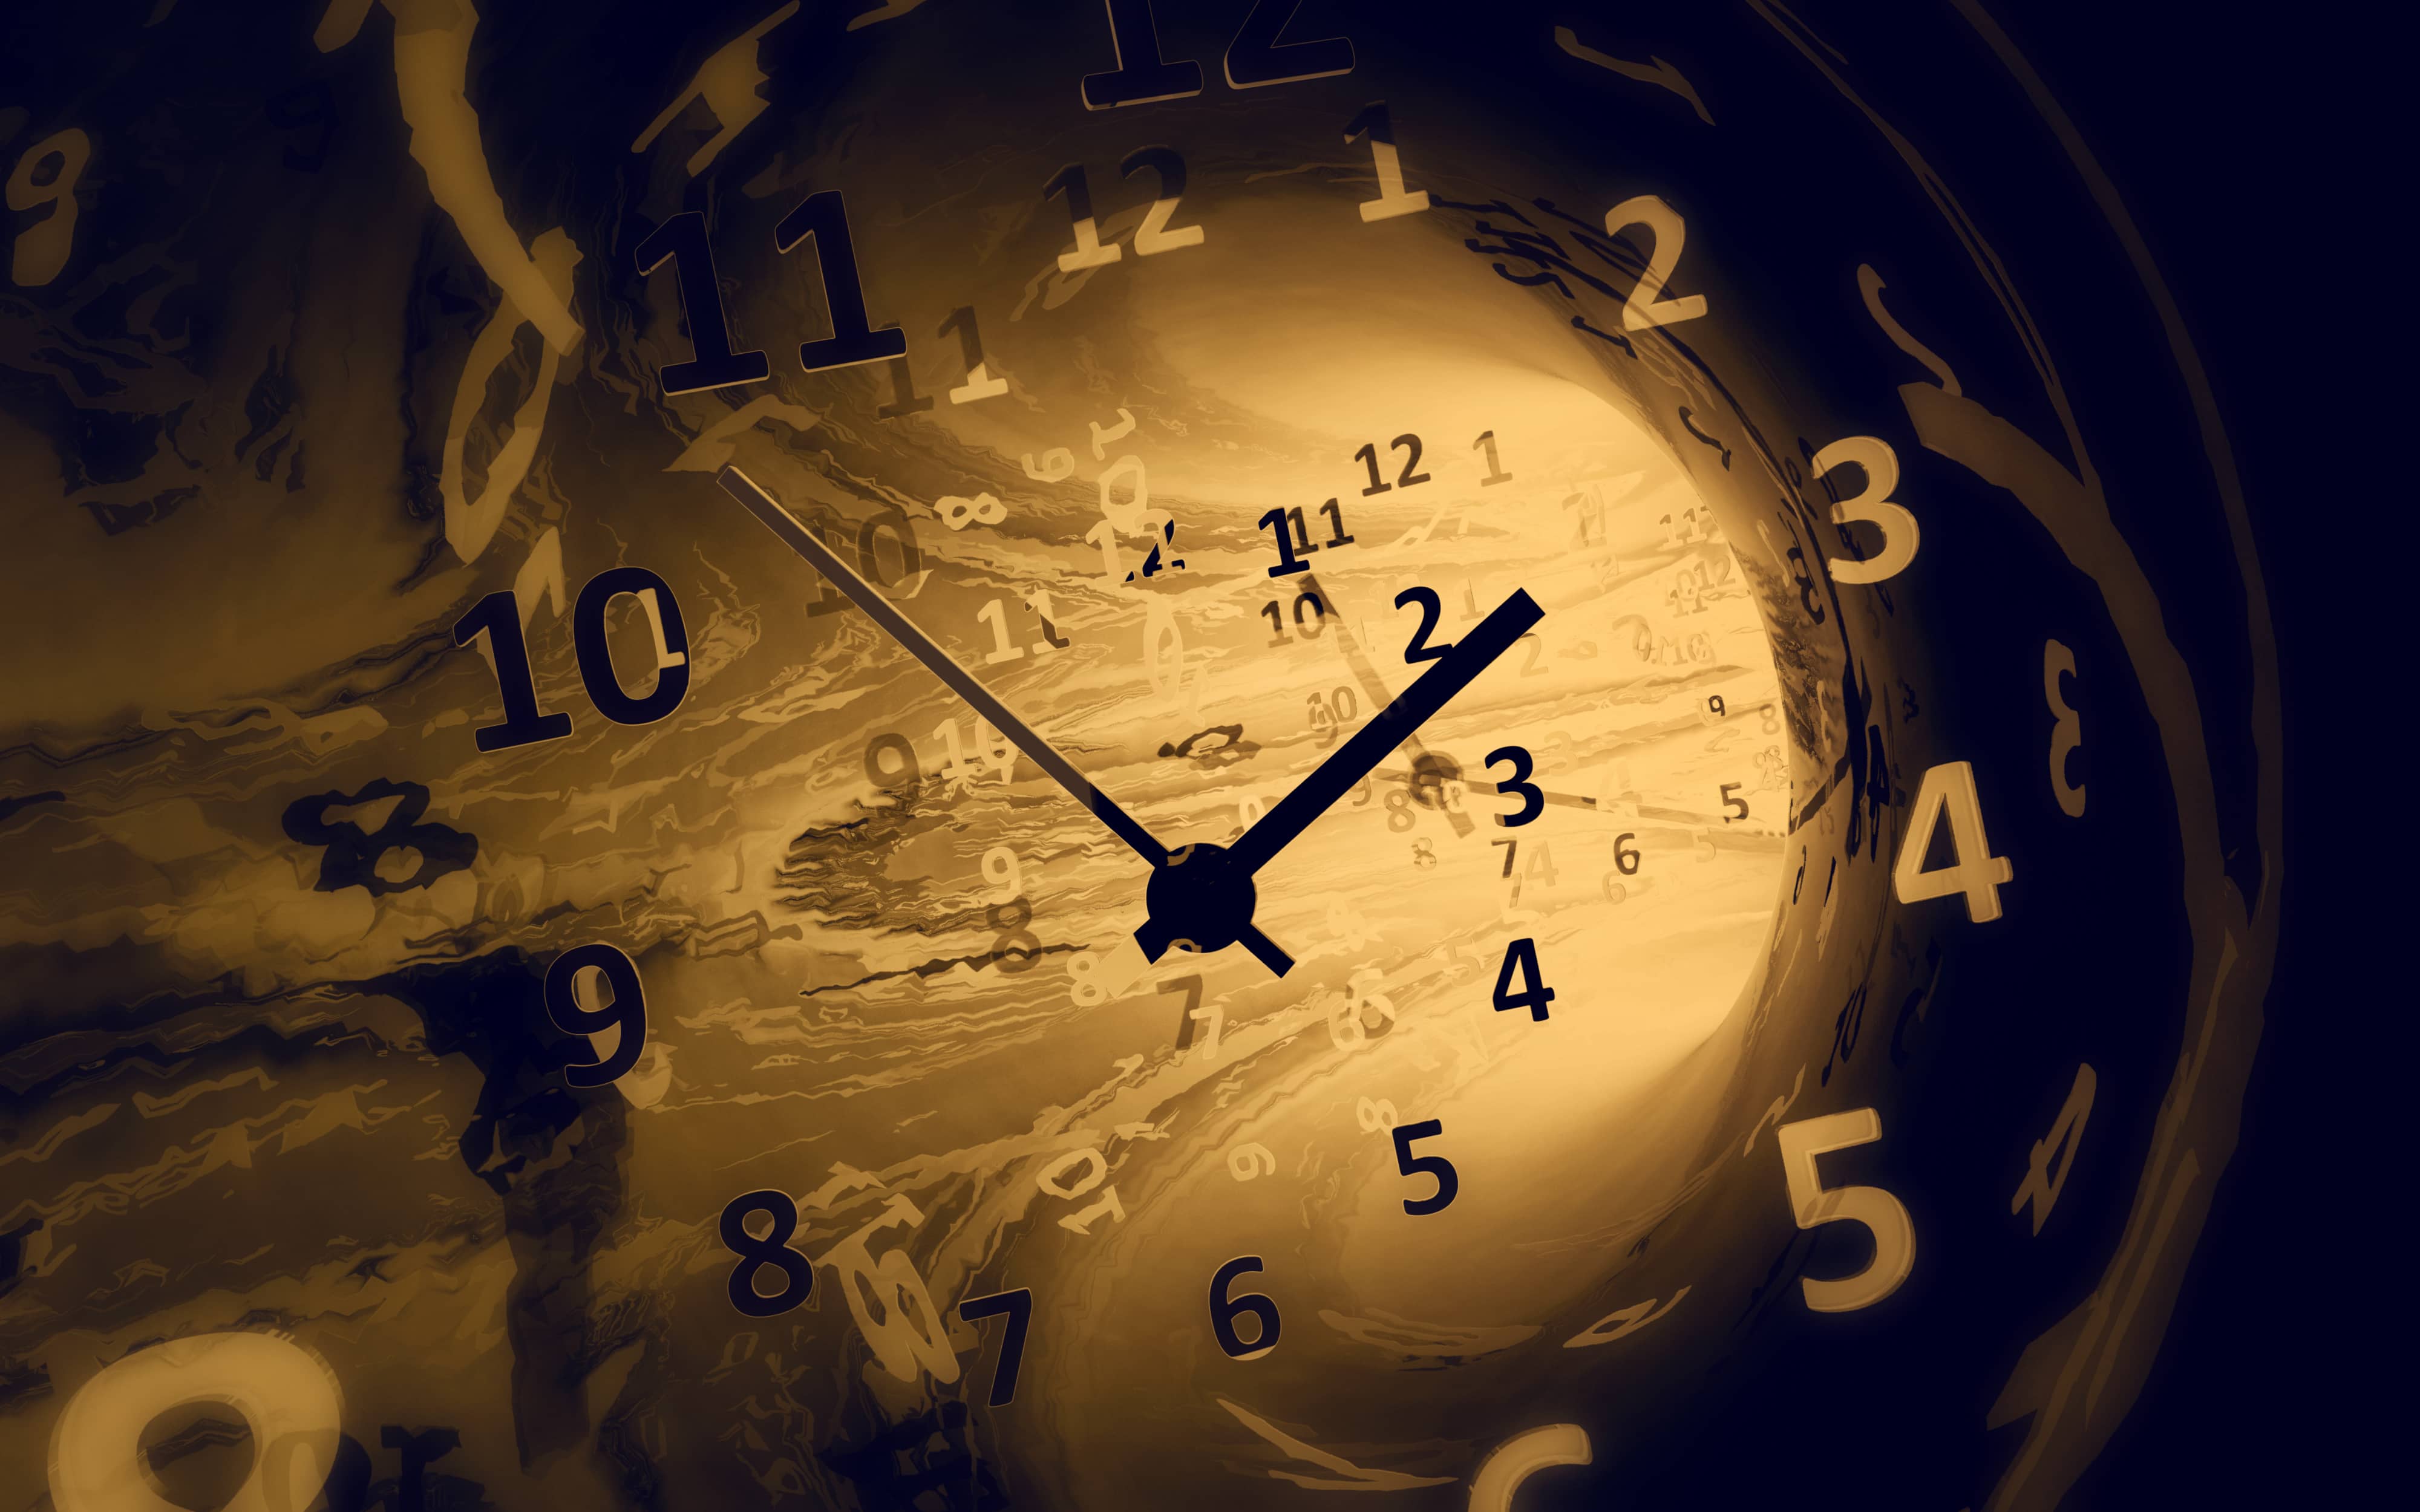 Dans le temps. Часы в прошлое. Путешествие во времени. Часы "путешествие во времени". Часы на красивом фоне.